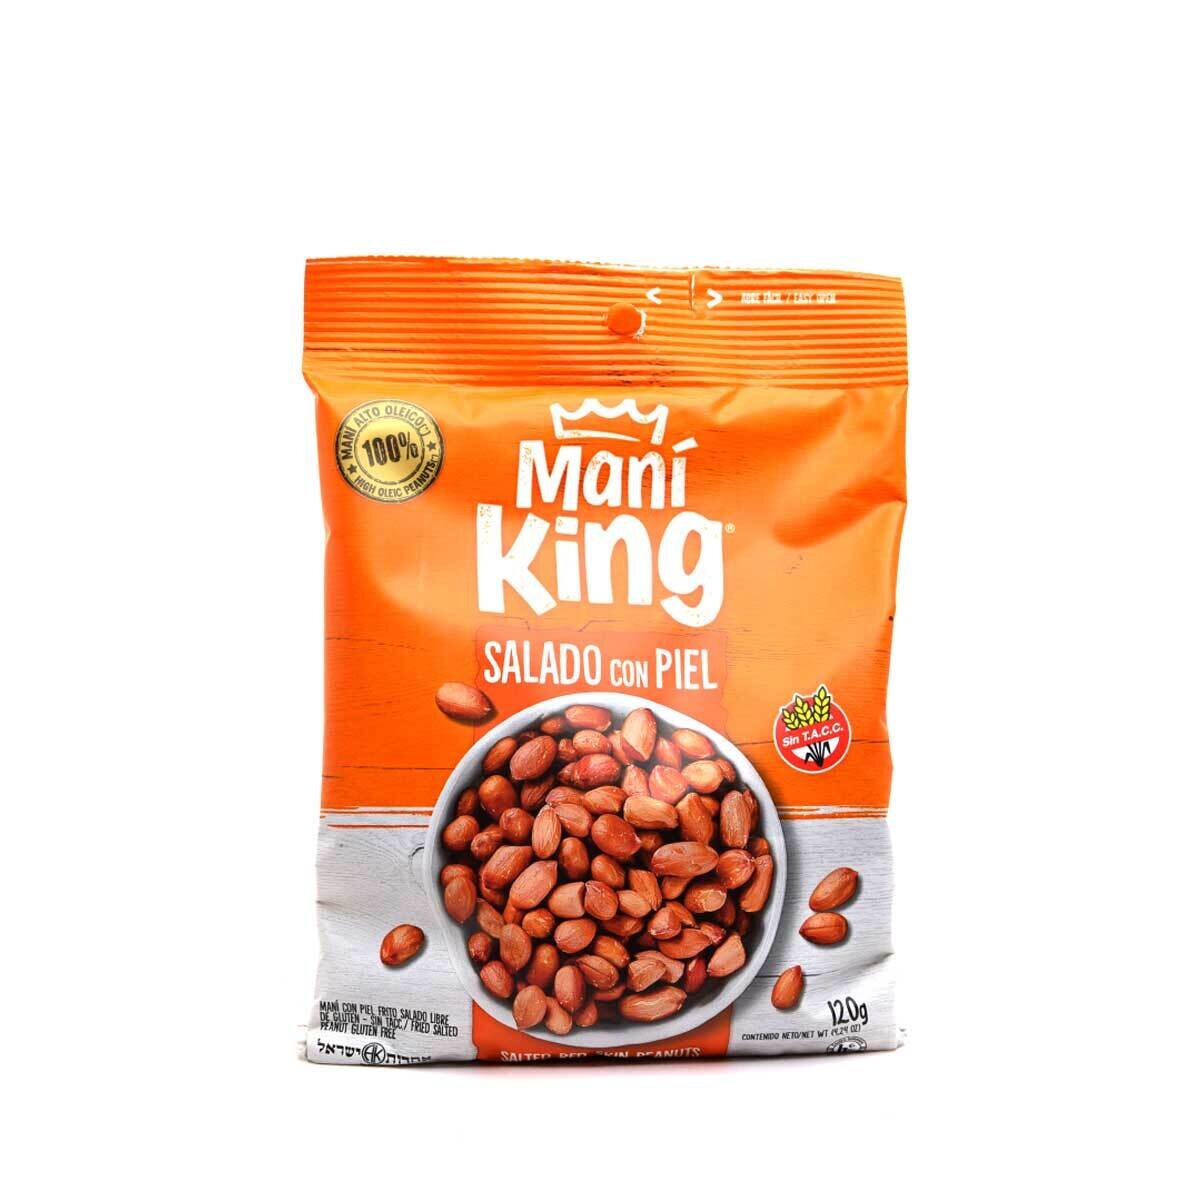 Mani king frito c/piel x120grs